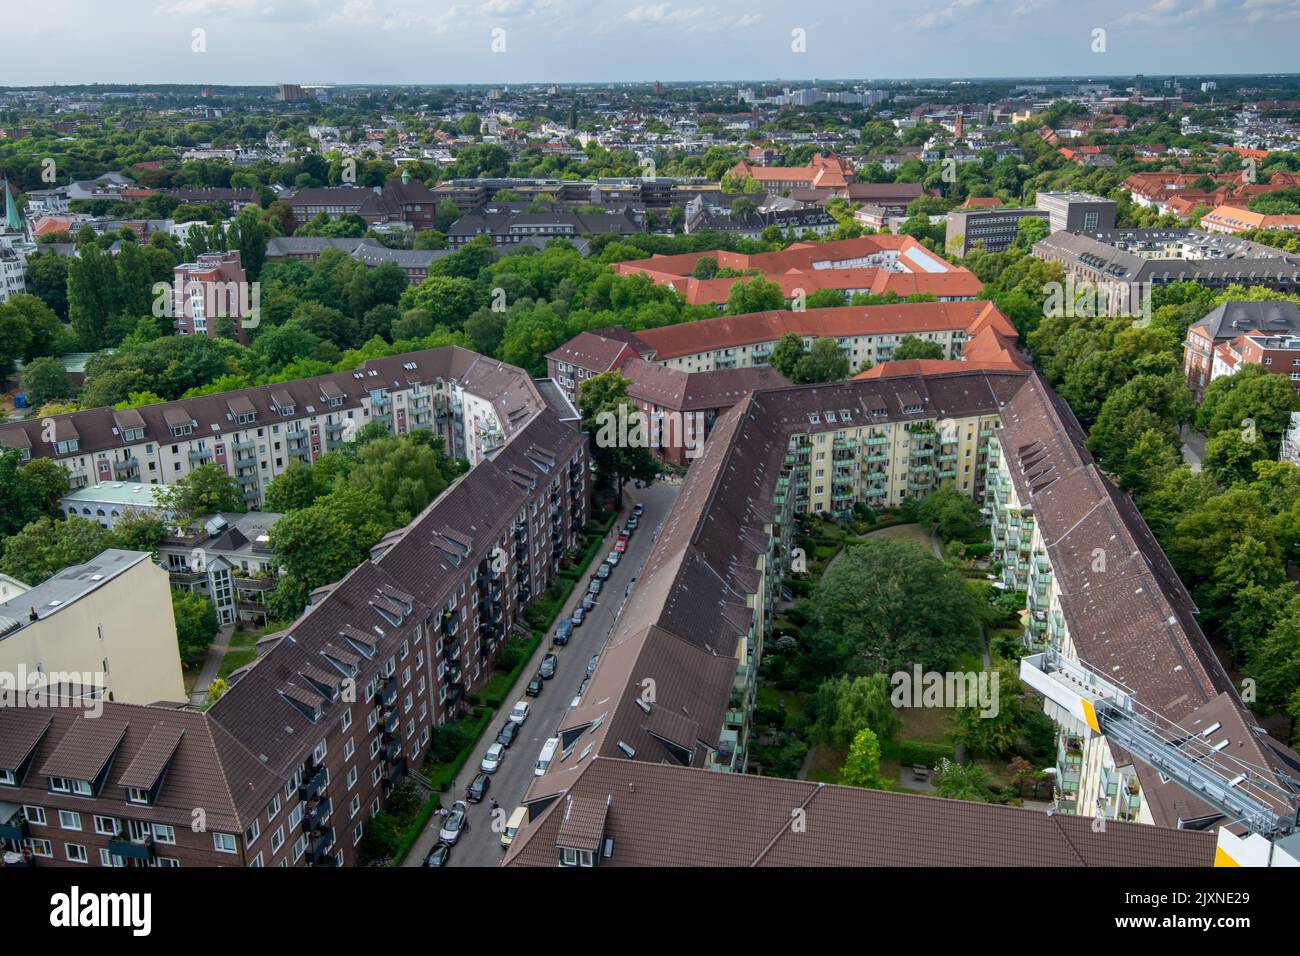 Vue de dessus des bâtiments avec cours à Hambourg, Allemagne. Architecture européenne typique. Banque D'Images